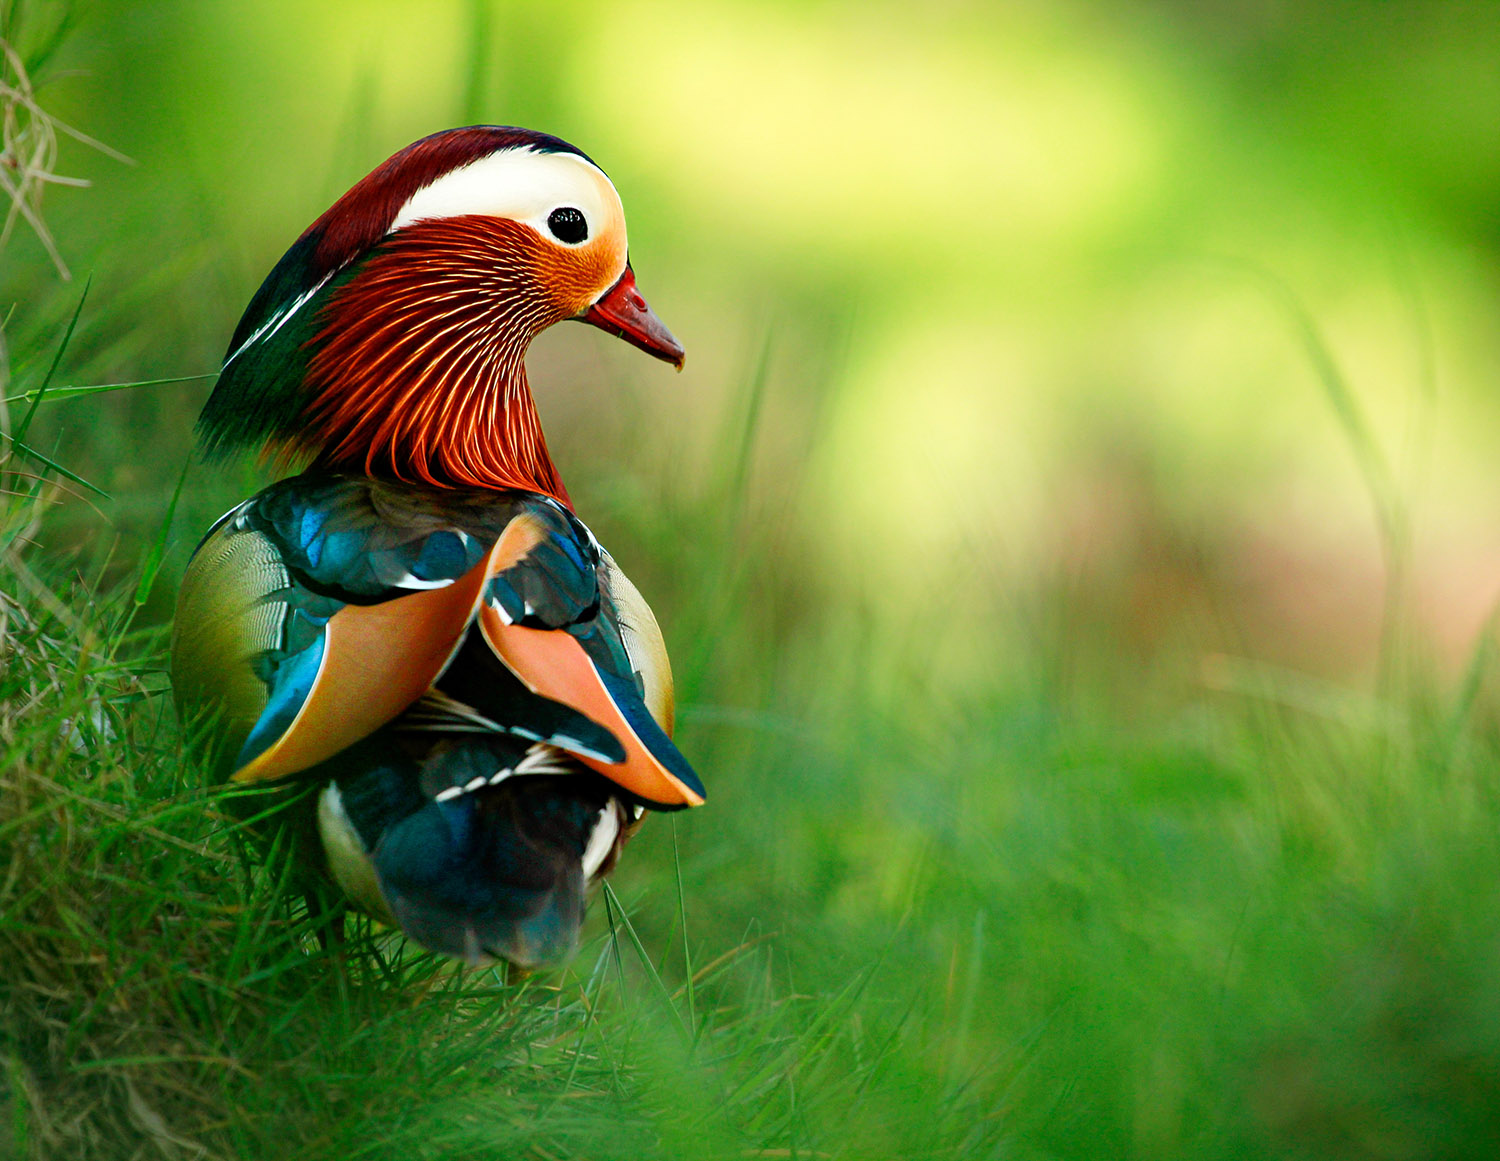 A colourful Mandarin duck